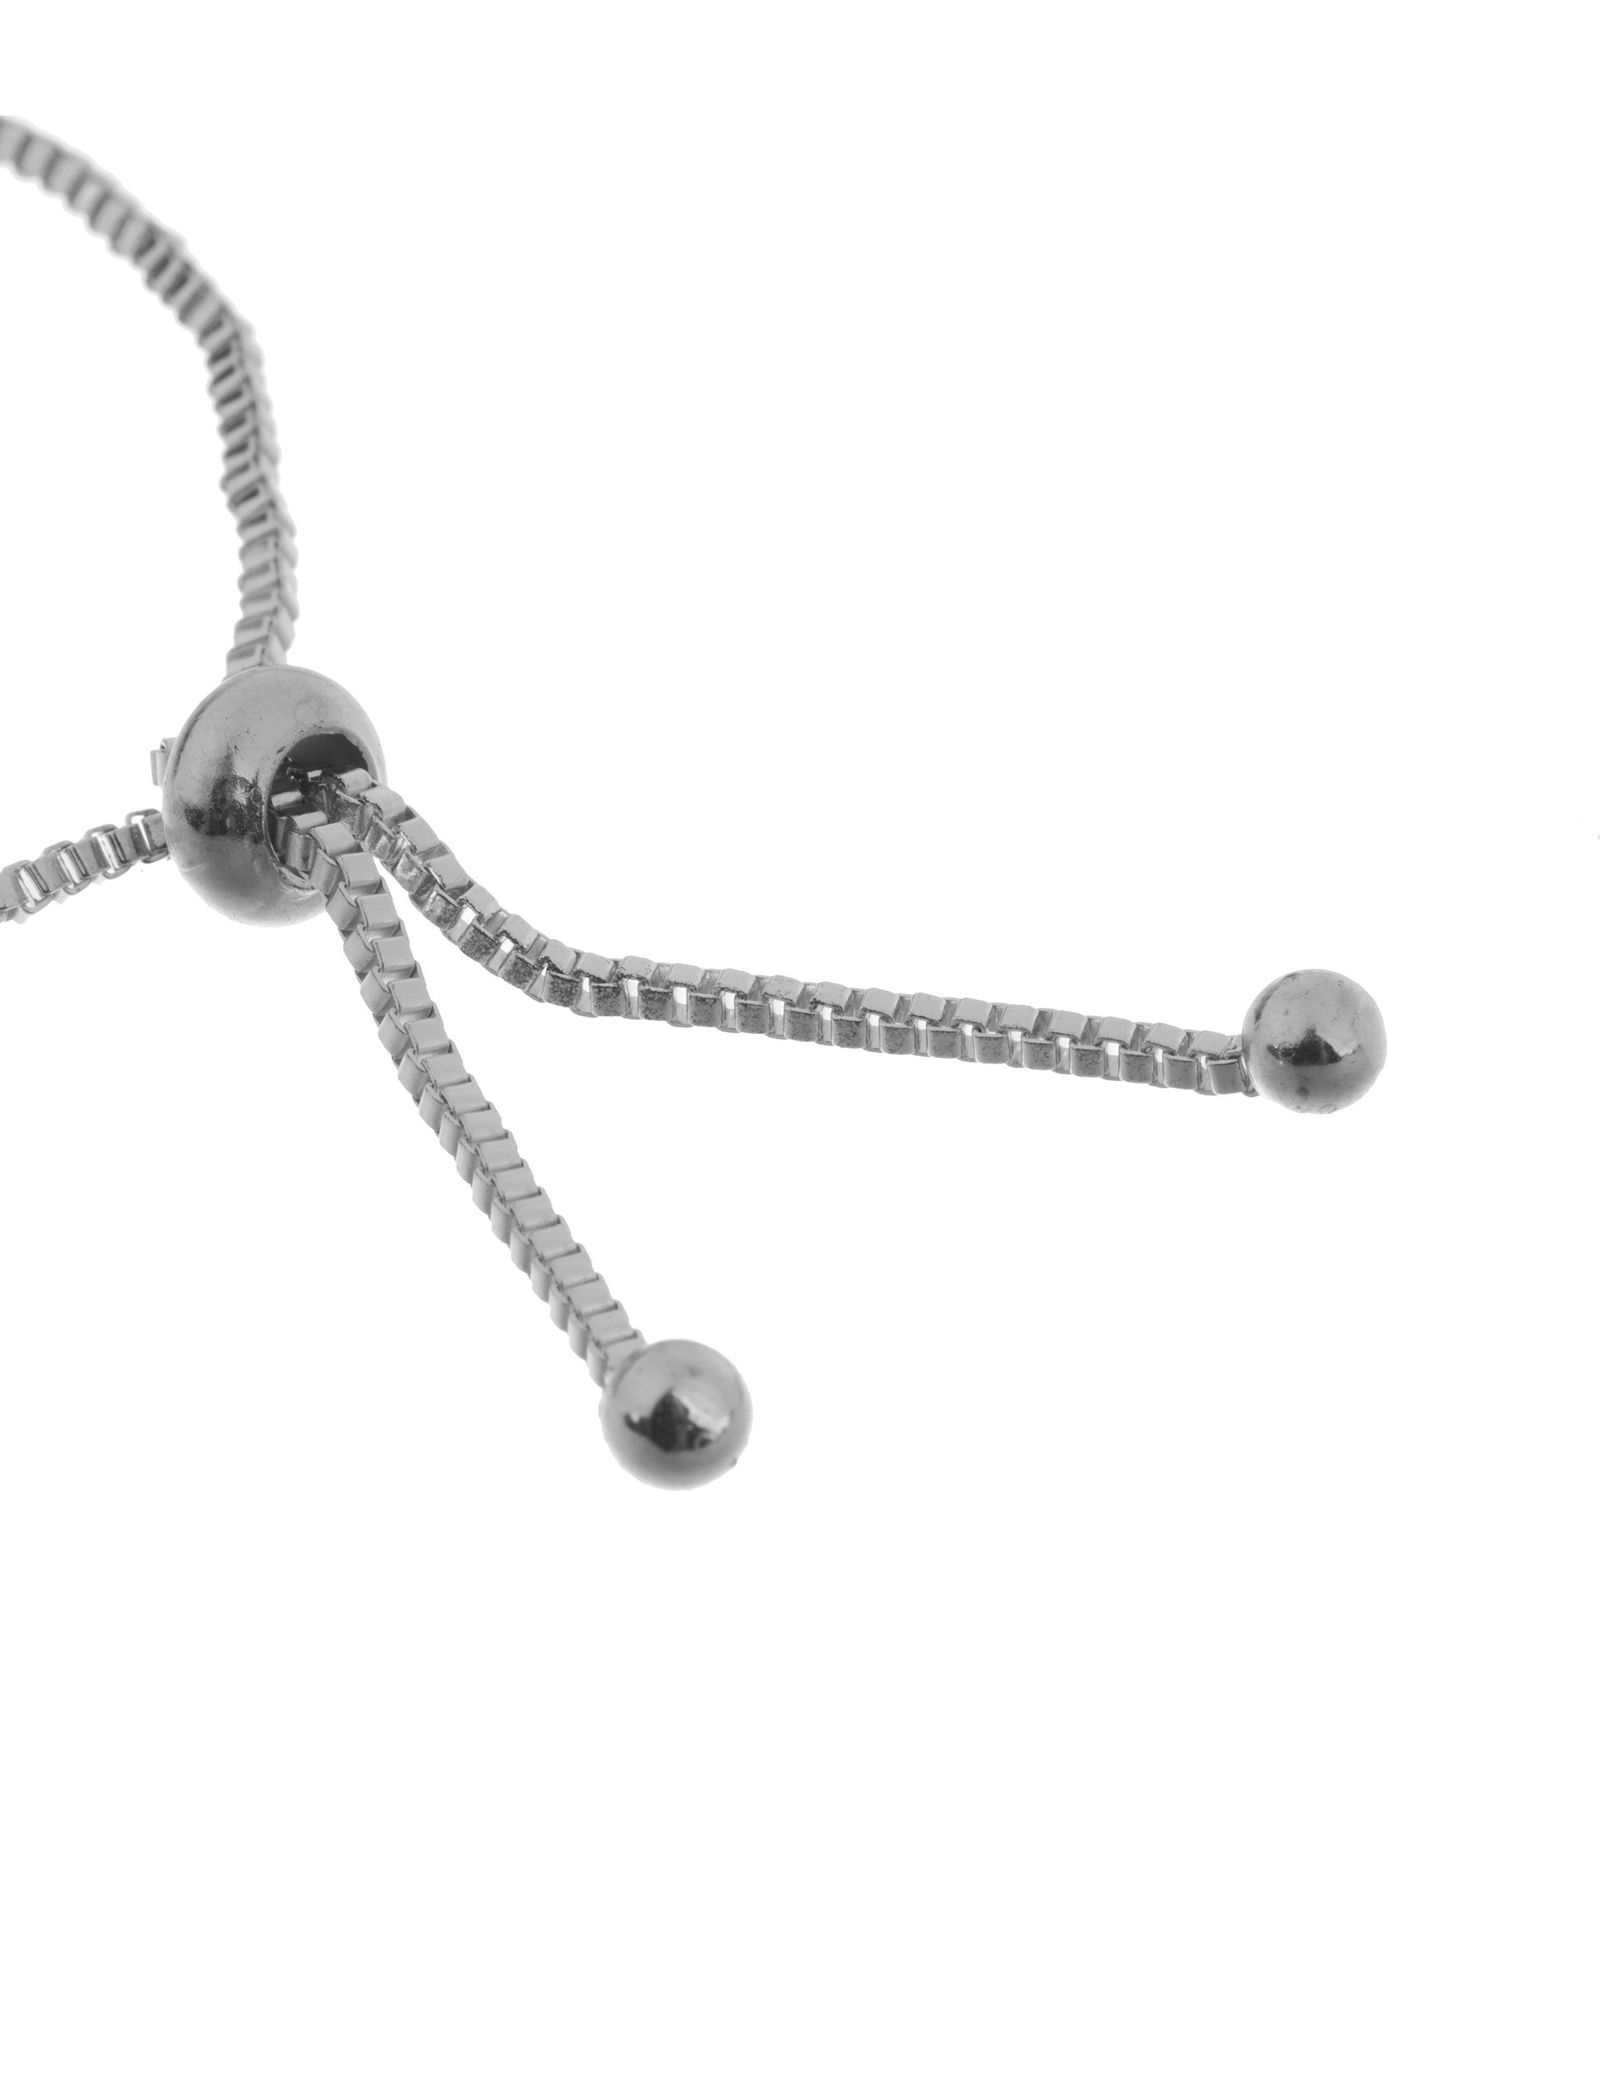 دستبند زنجیری زنانه - کوییز - نقره اي - 4